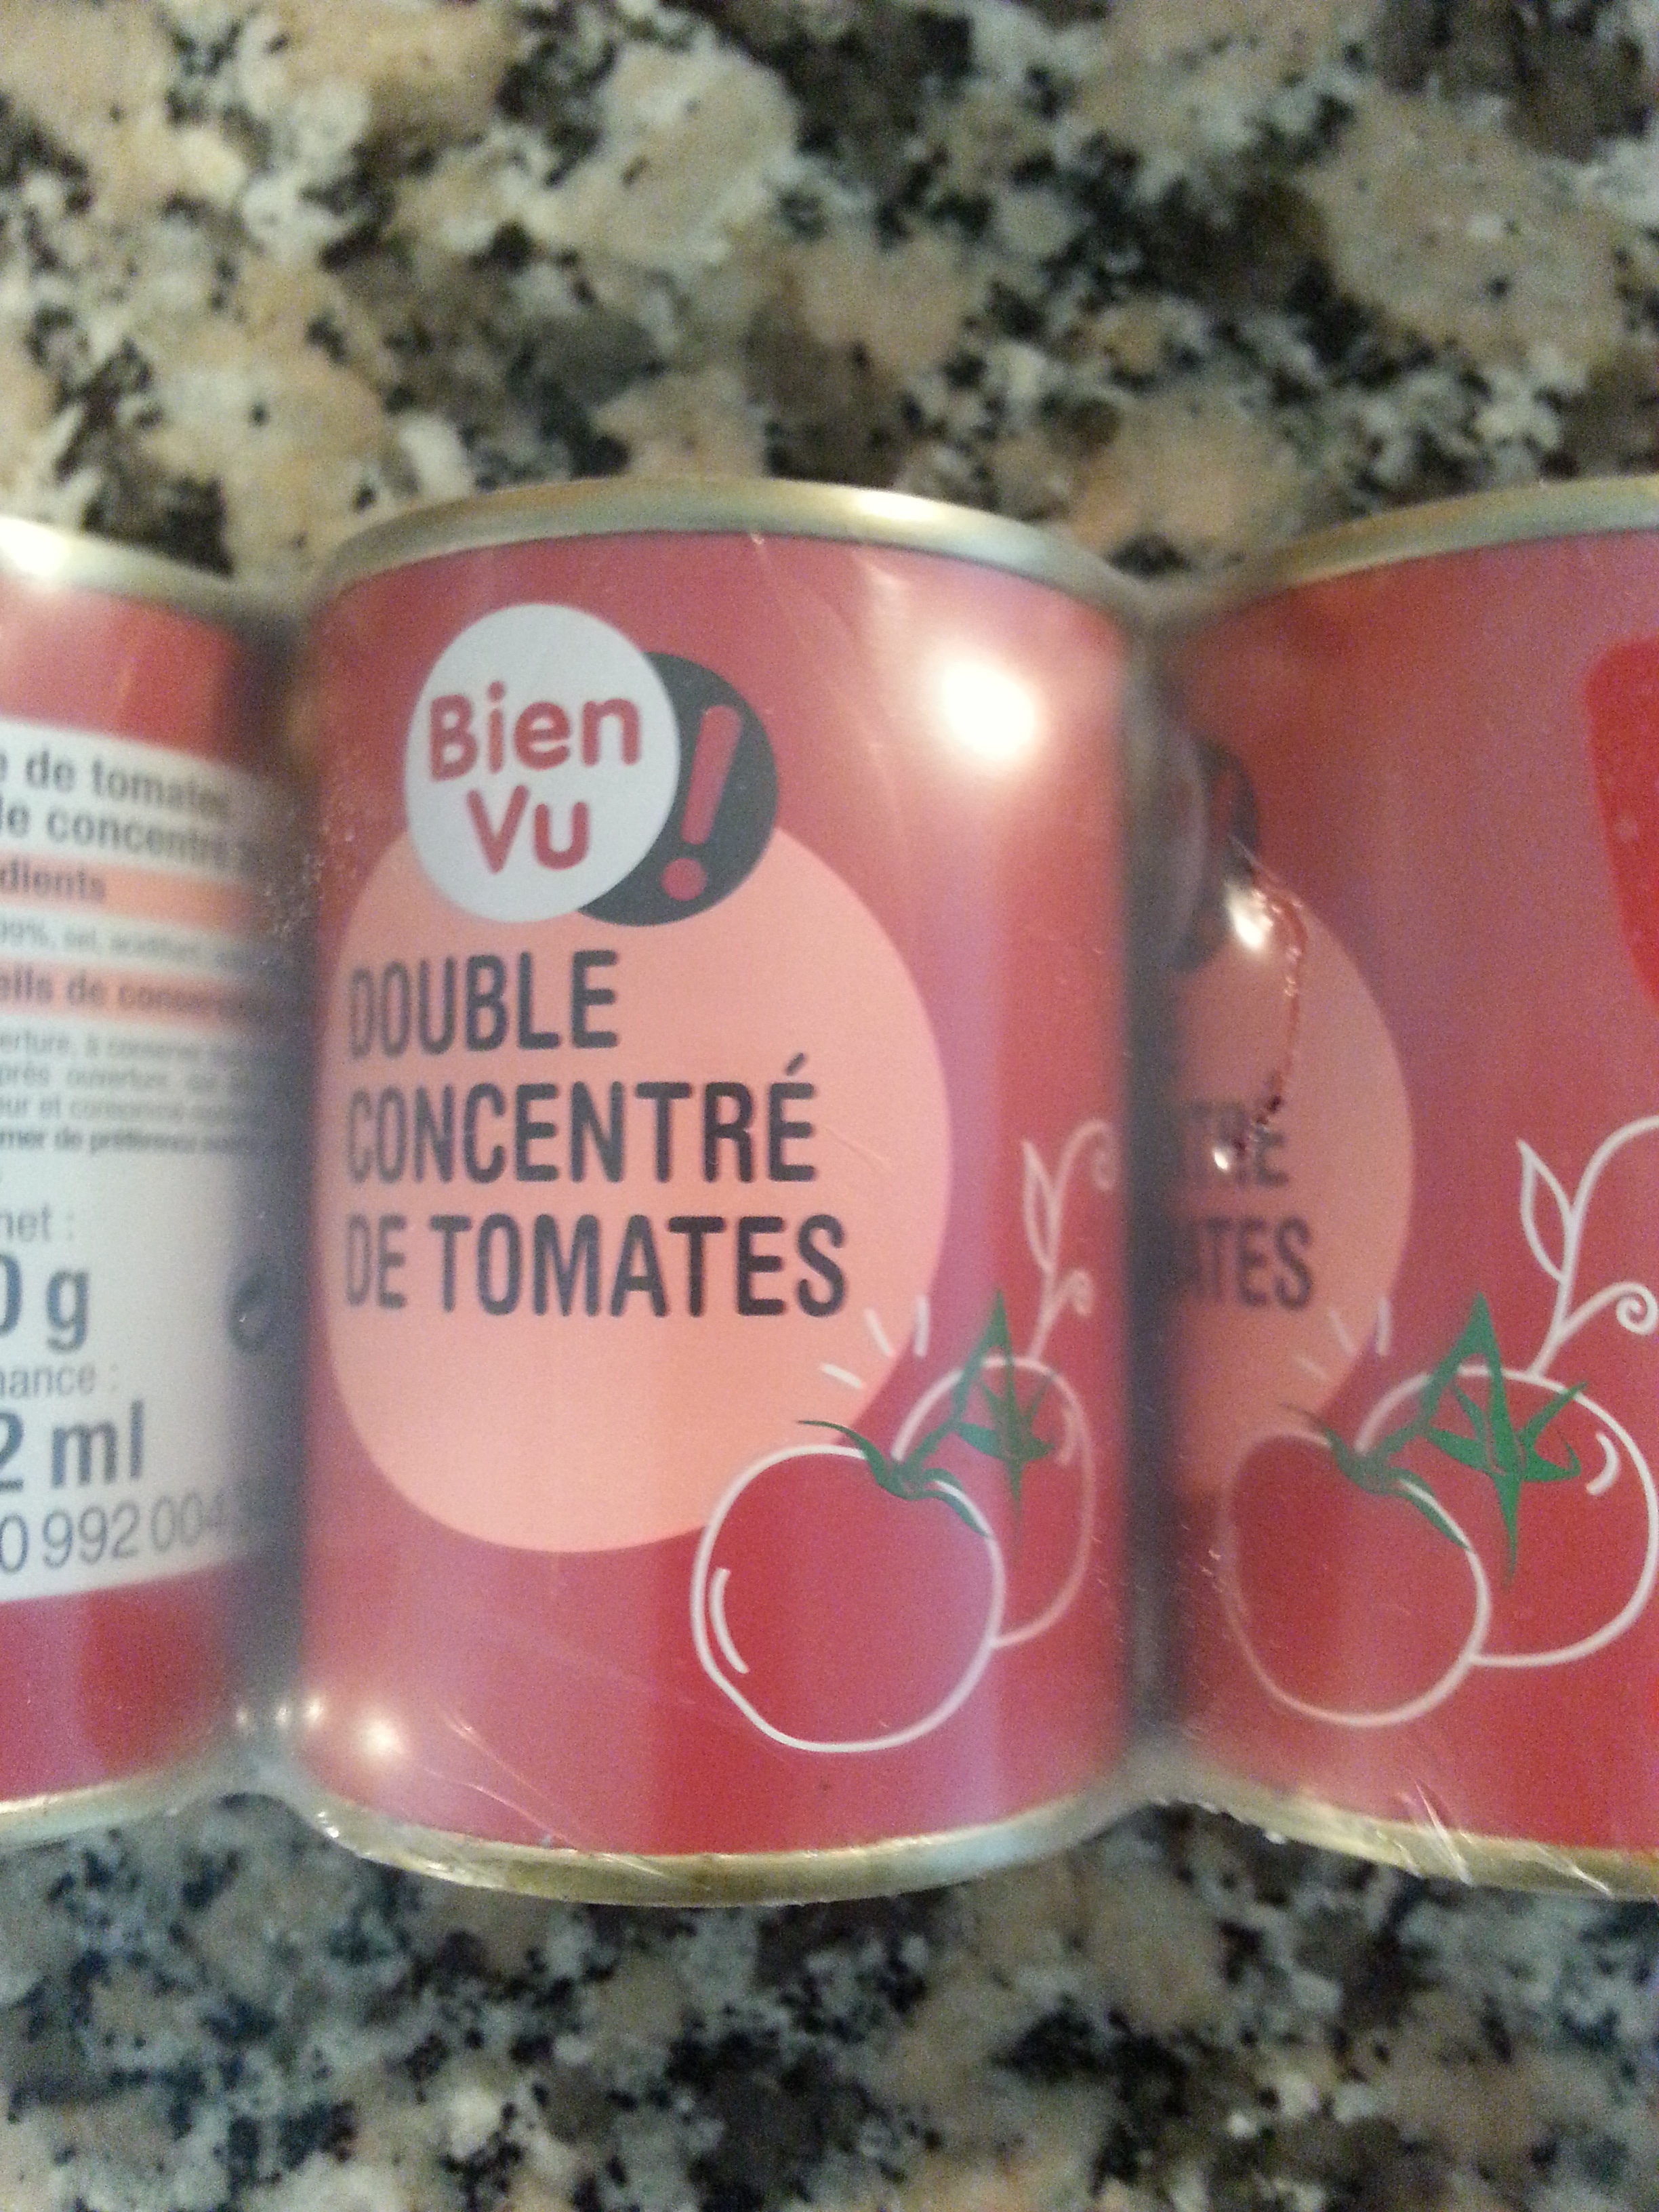 Double concentré de tomates 28% - Product - fr